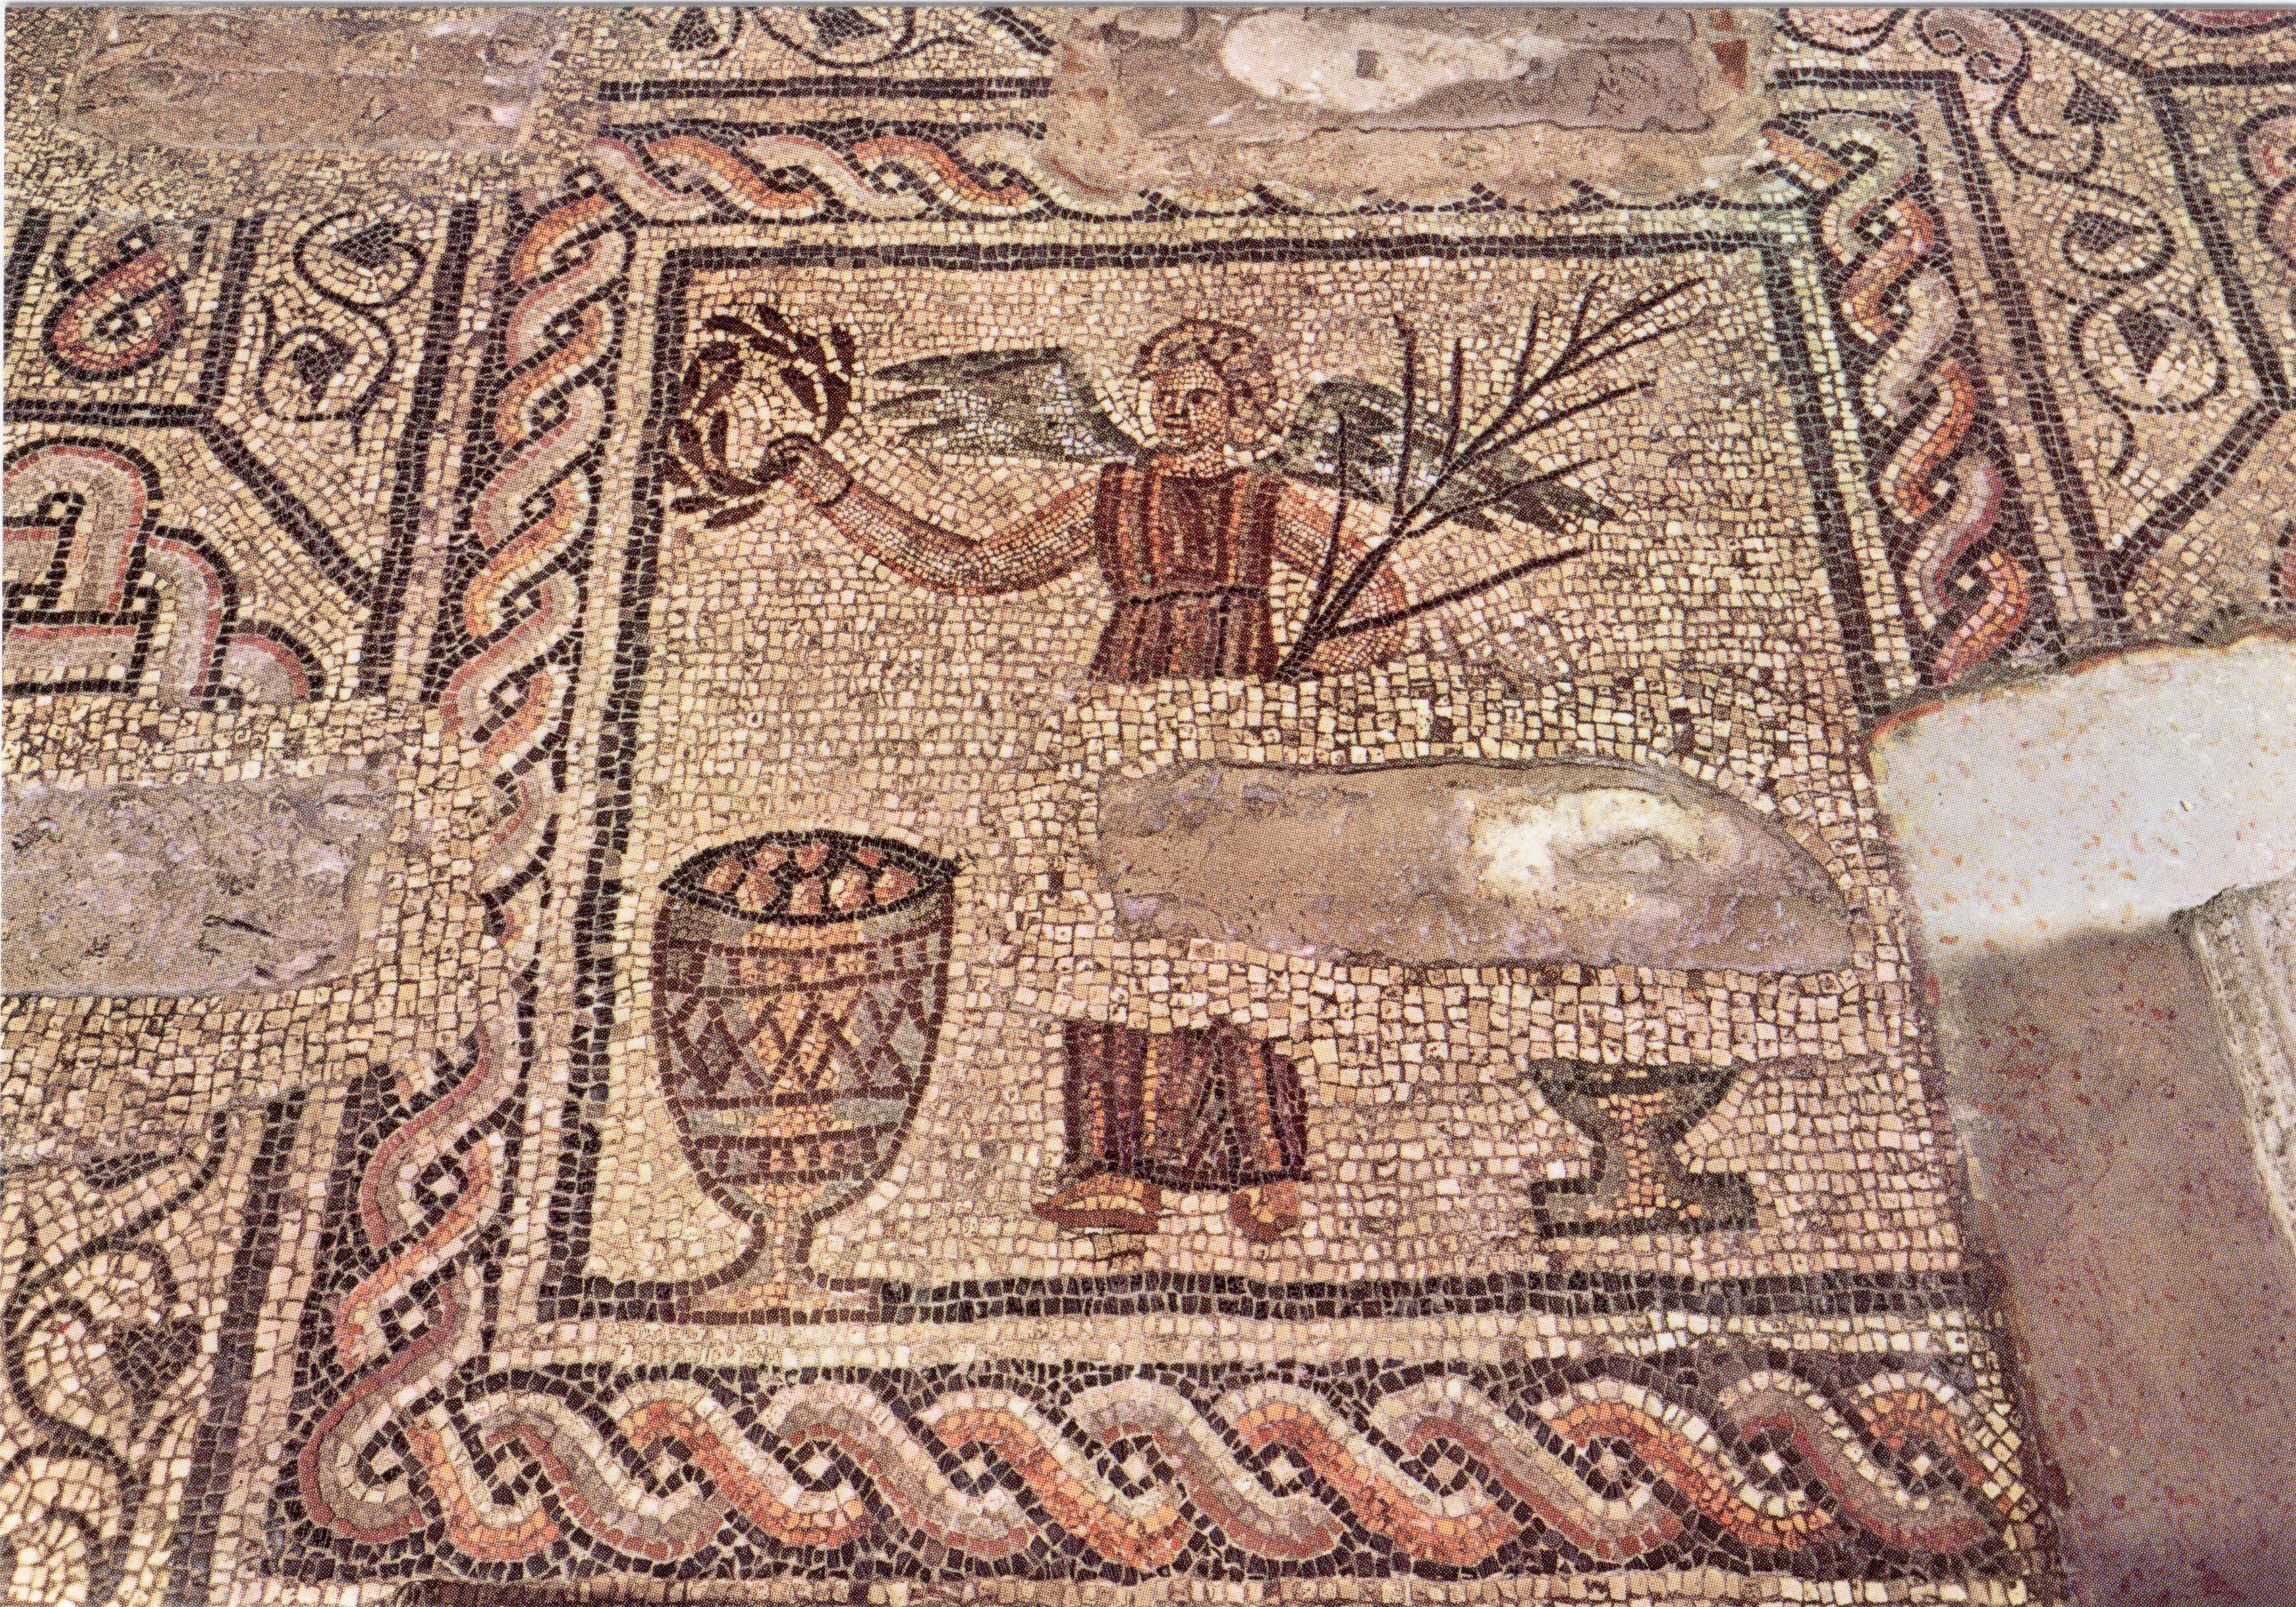 Risultati immagini per foto delle icone e dei mosaici della basilica di aquileia